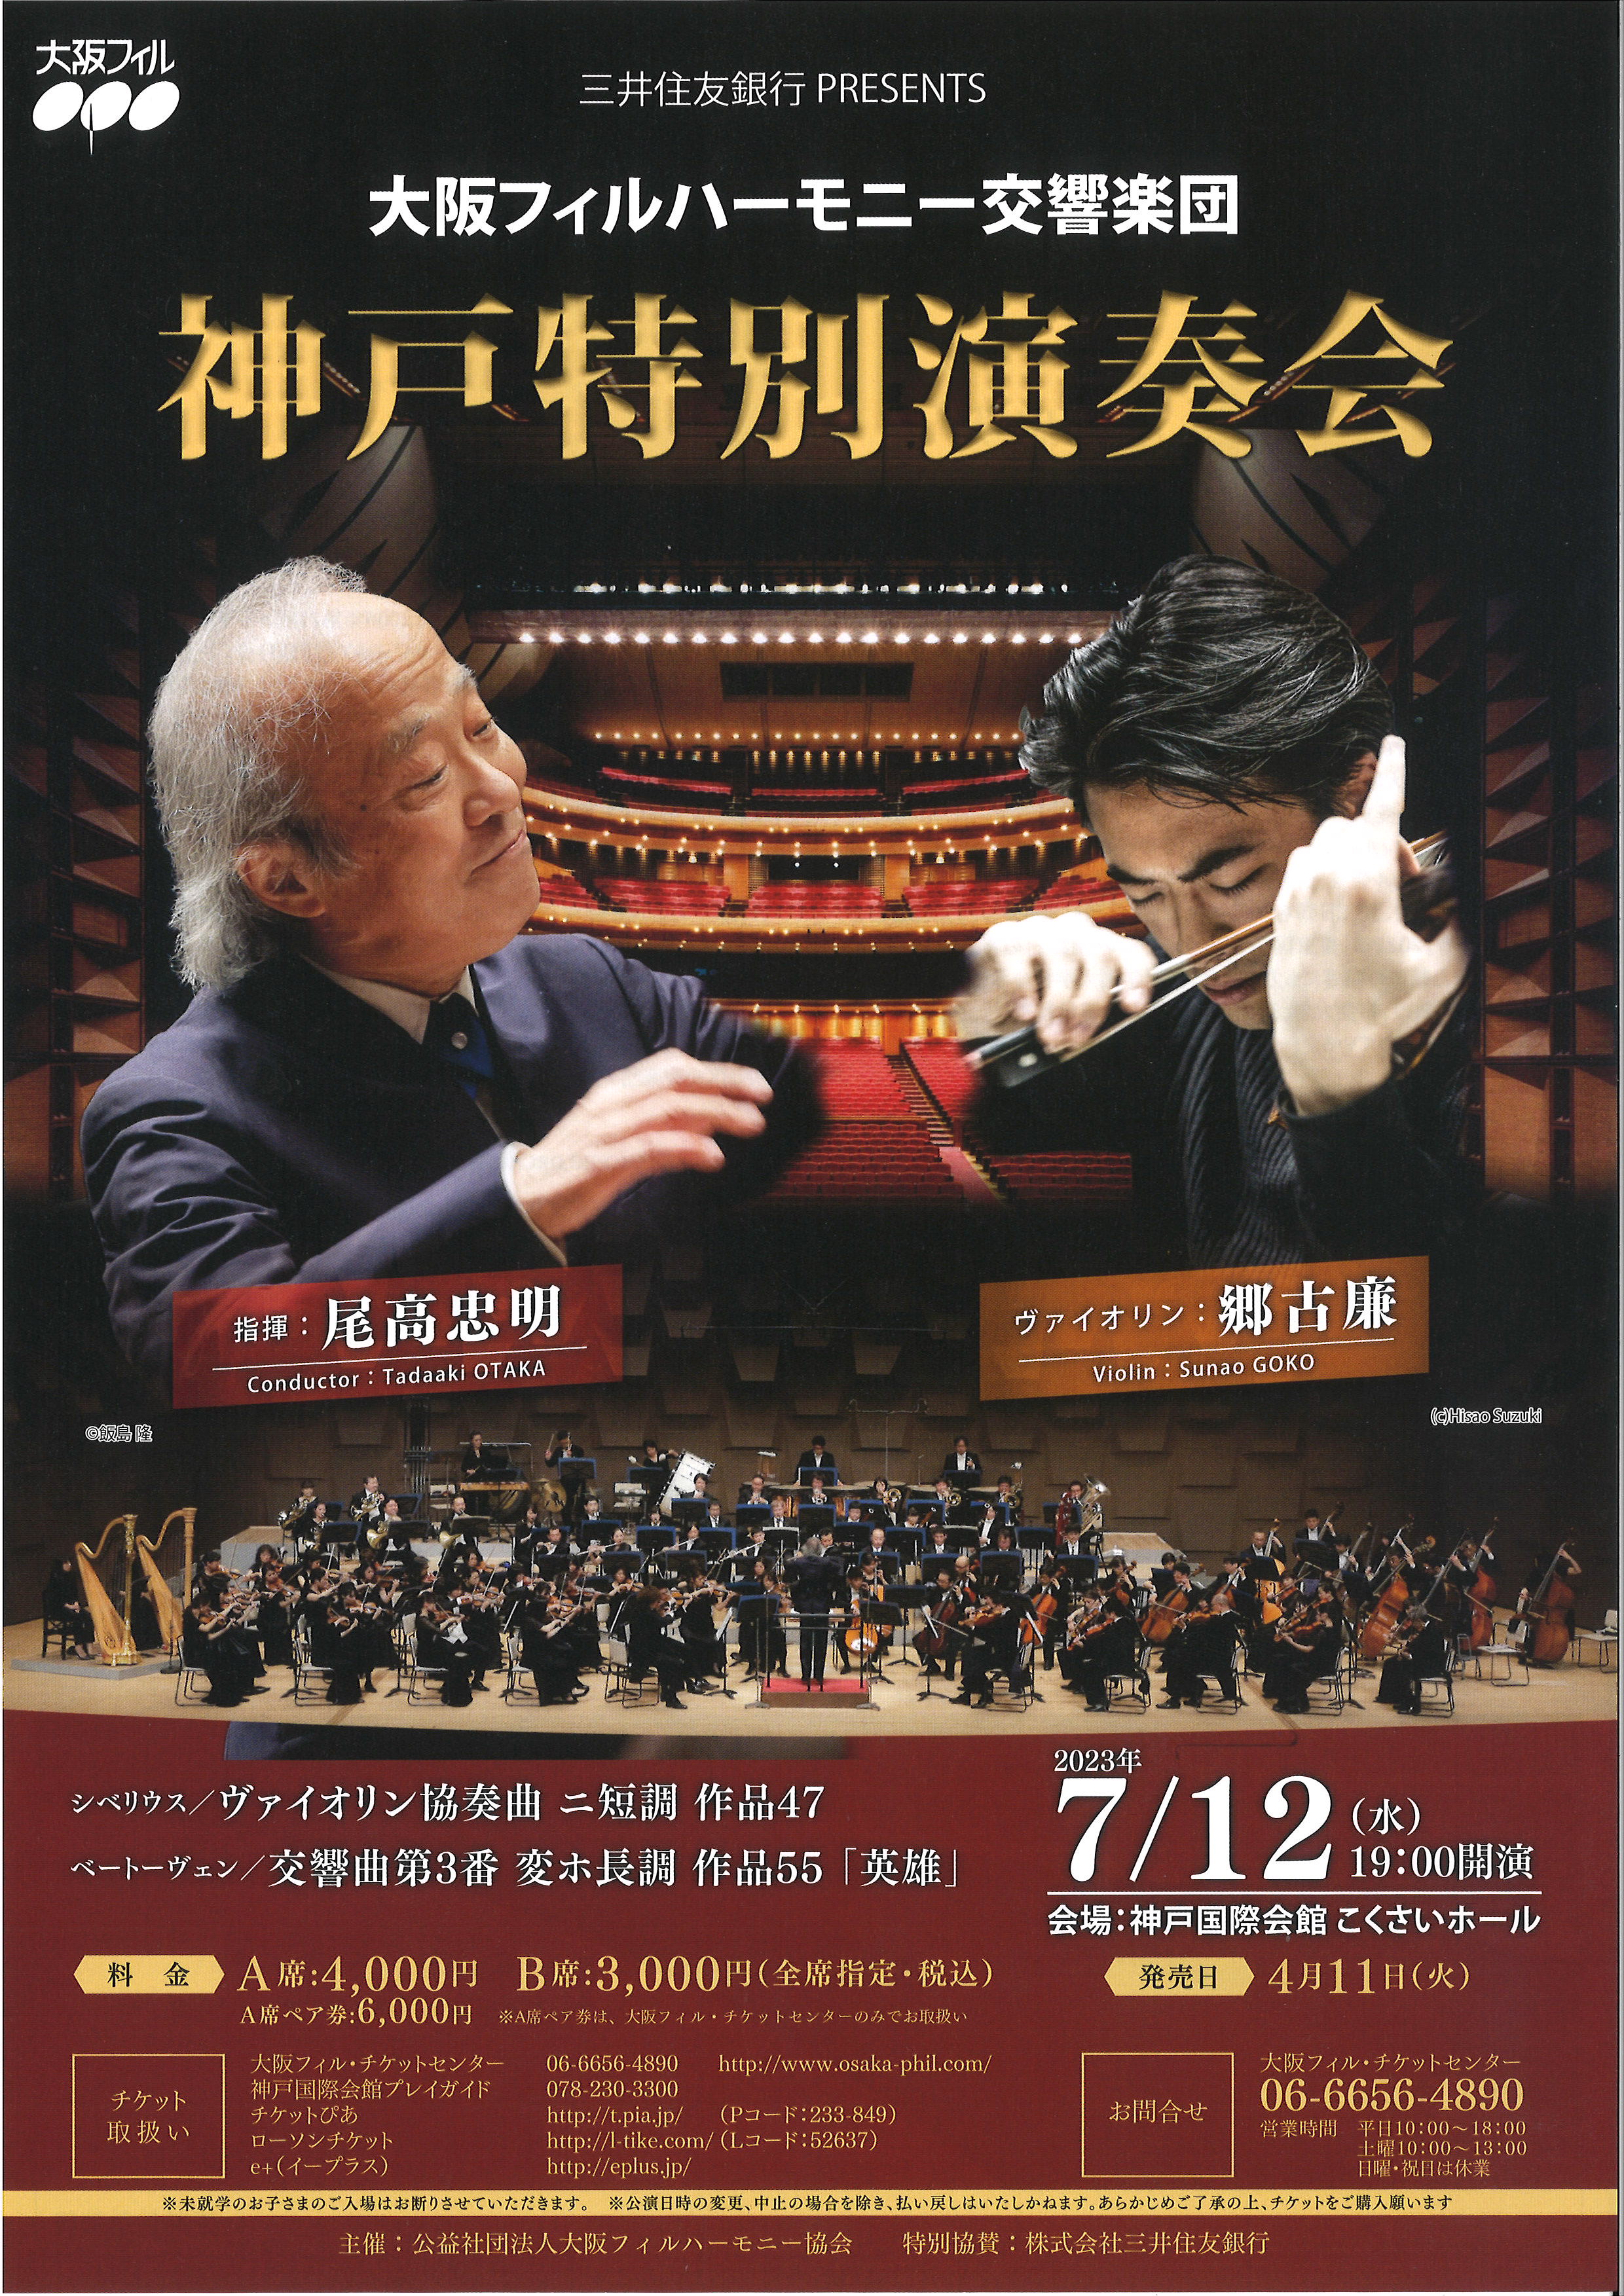 大阪フィルハーモニー交響楽団神戸特別演奏会のフライヤー画像